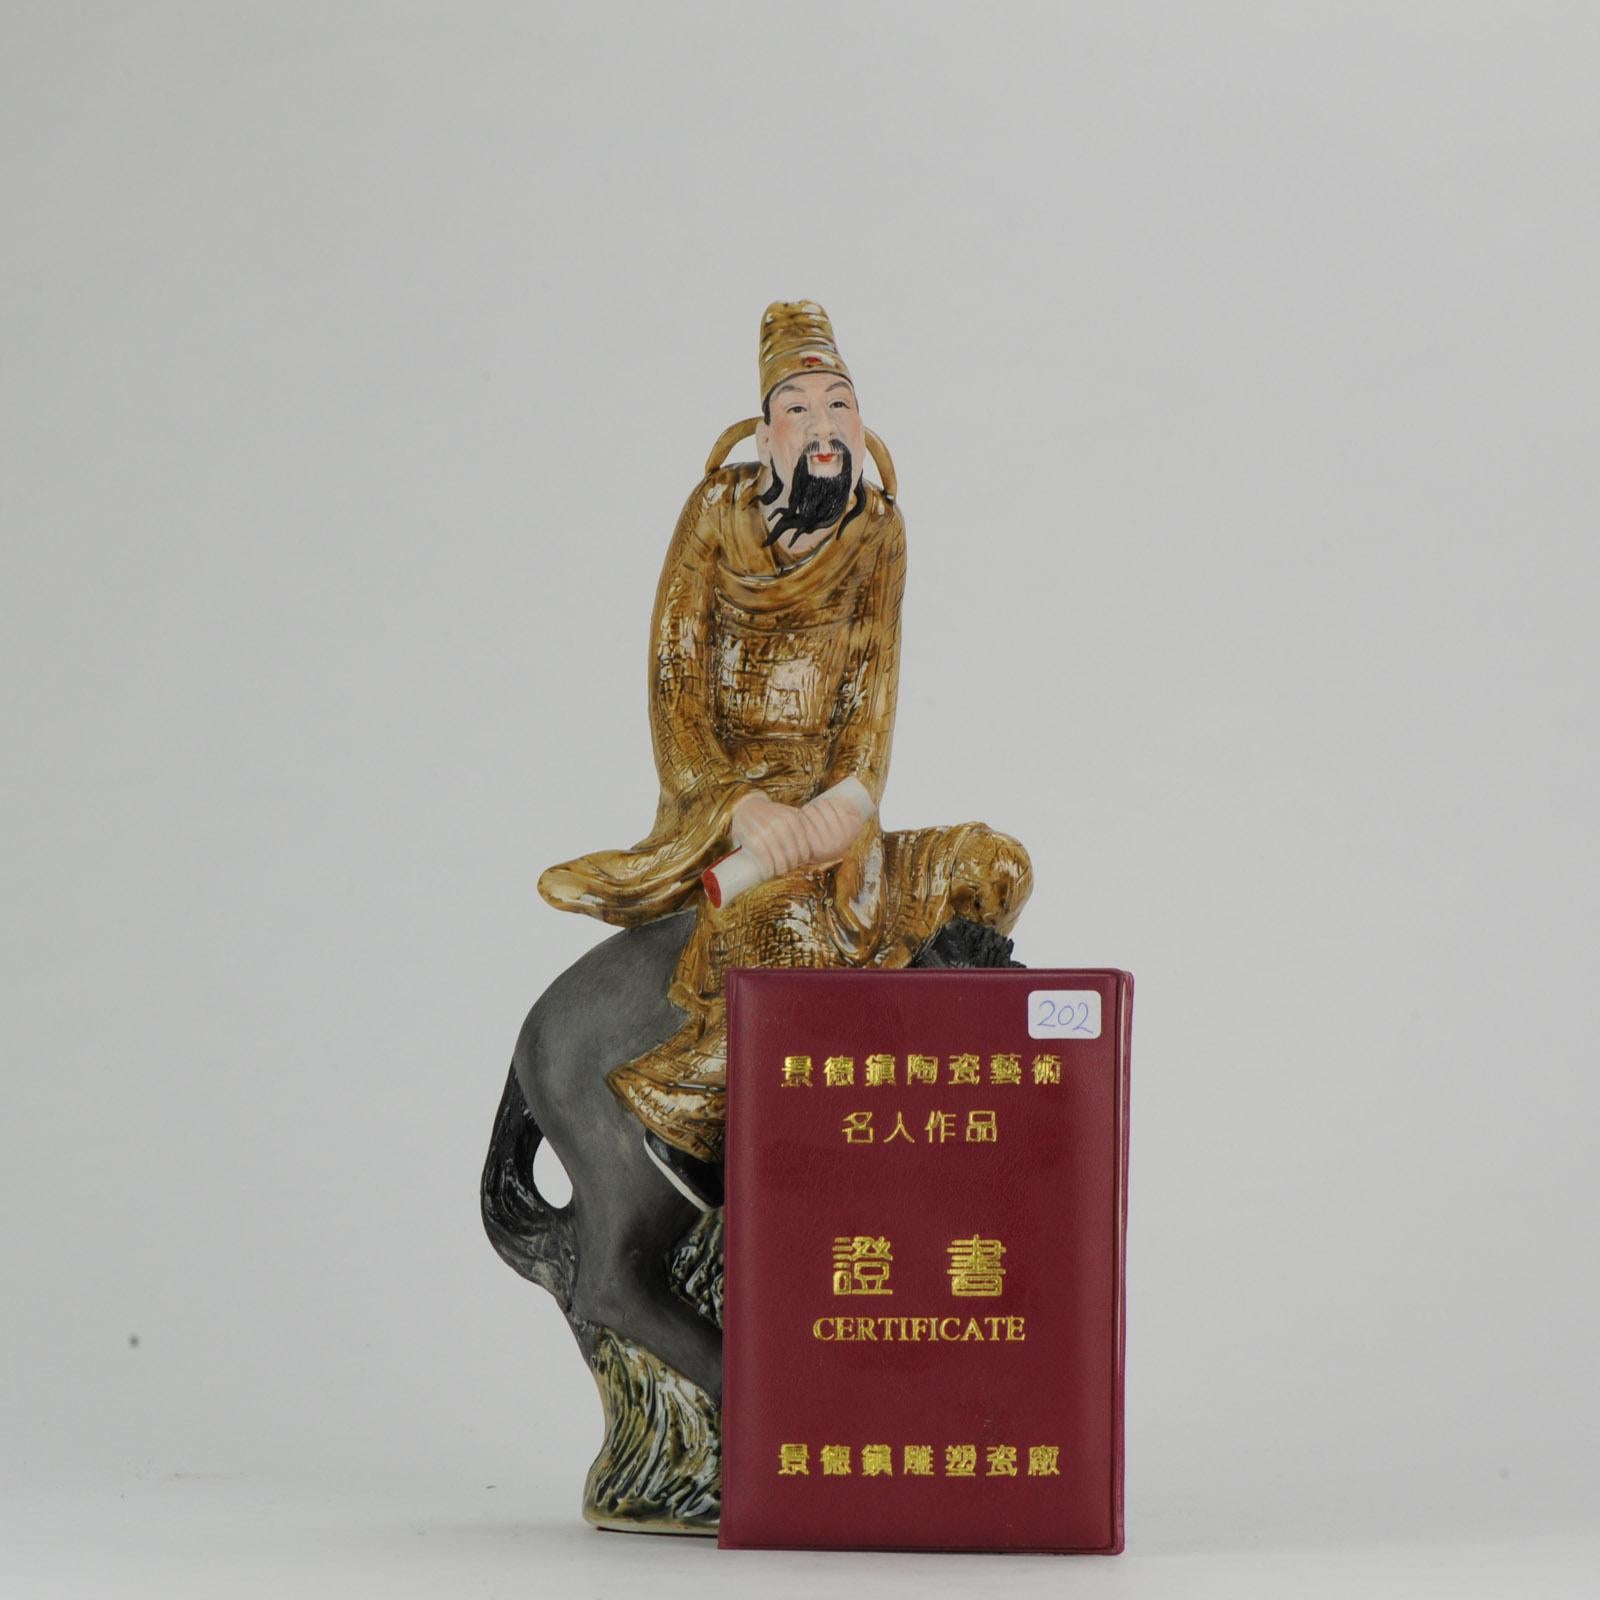 Polychrome Porzellanskulptur eines Mannes mit Schriftrolle, der auf einem Pferd sitzt. Datiert 1998. Geschaffen von Xu Jian Jian (1965), Mitglied der Künstlervereinigung von Jingdezhen. Gekennzeichnet mit Siegelmarke. China, Jingdezhen. Mit